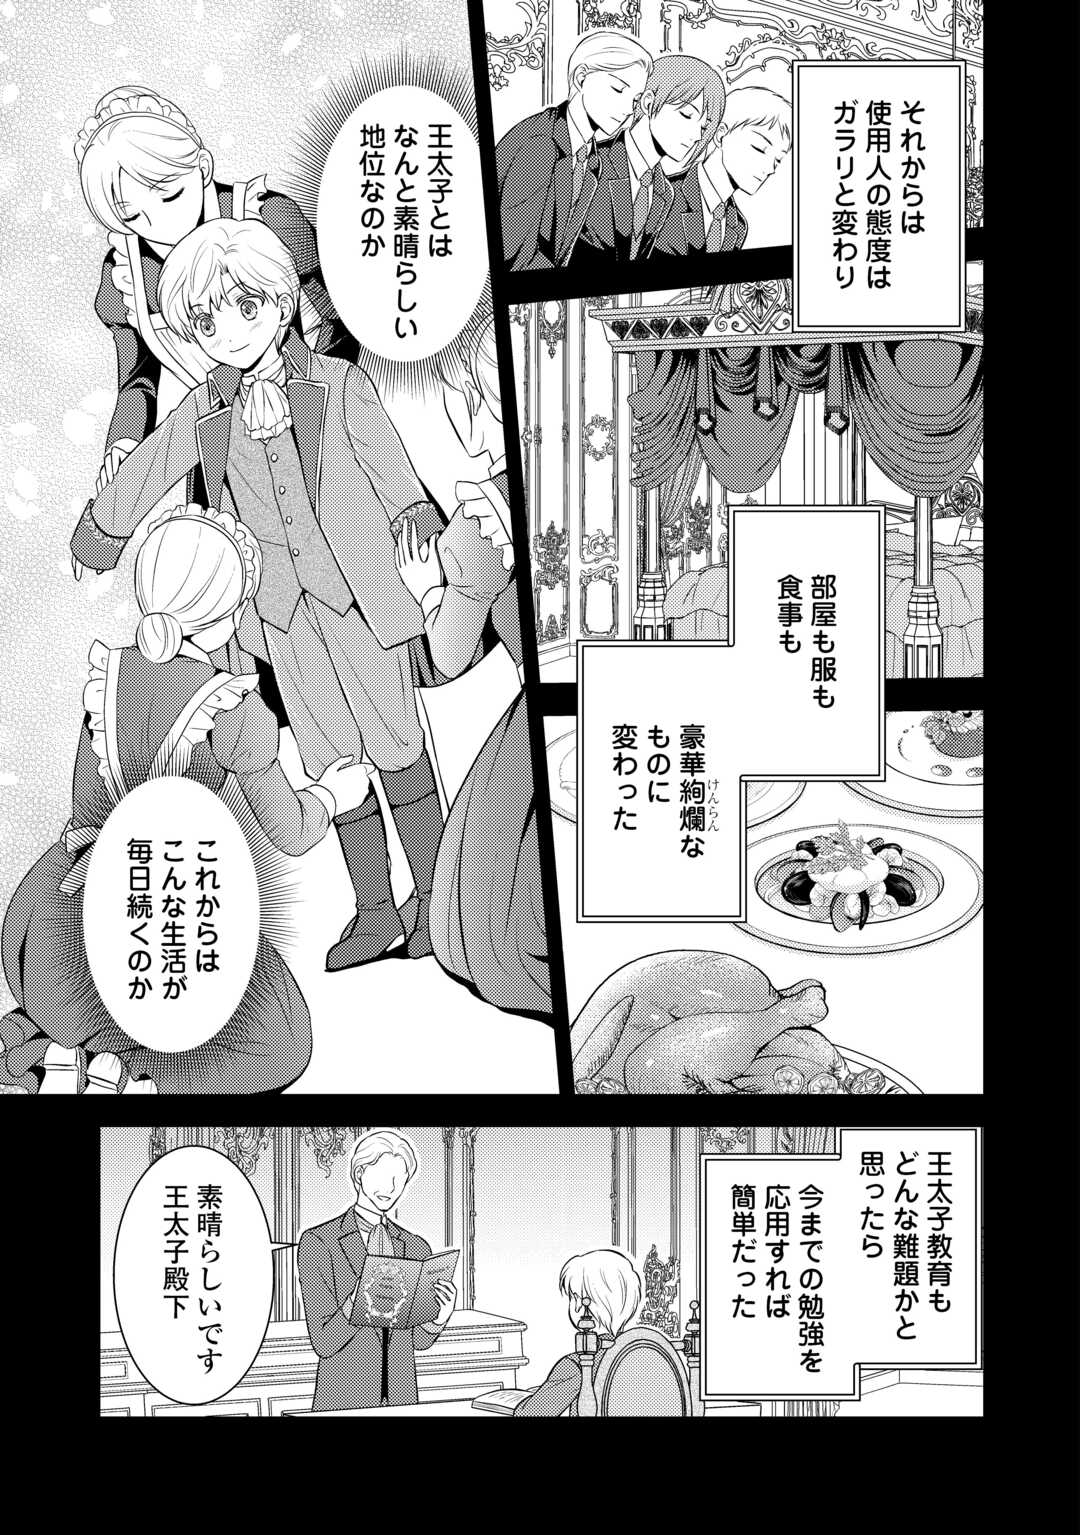 Kawaii Gimai ga Konyakuhaki Saretarashii no de, Ima kara Orei ni Mairimasu. - Chapter 14 - Page 3